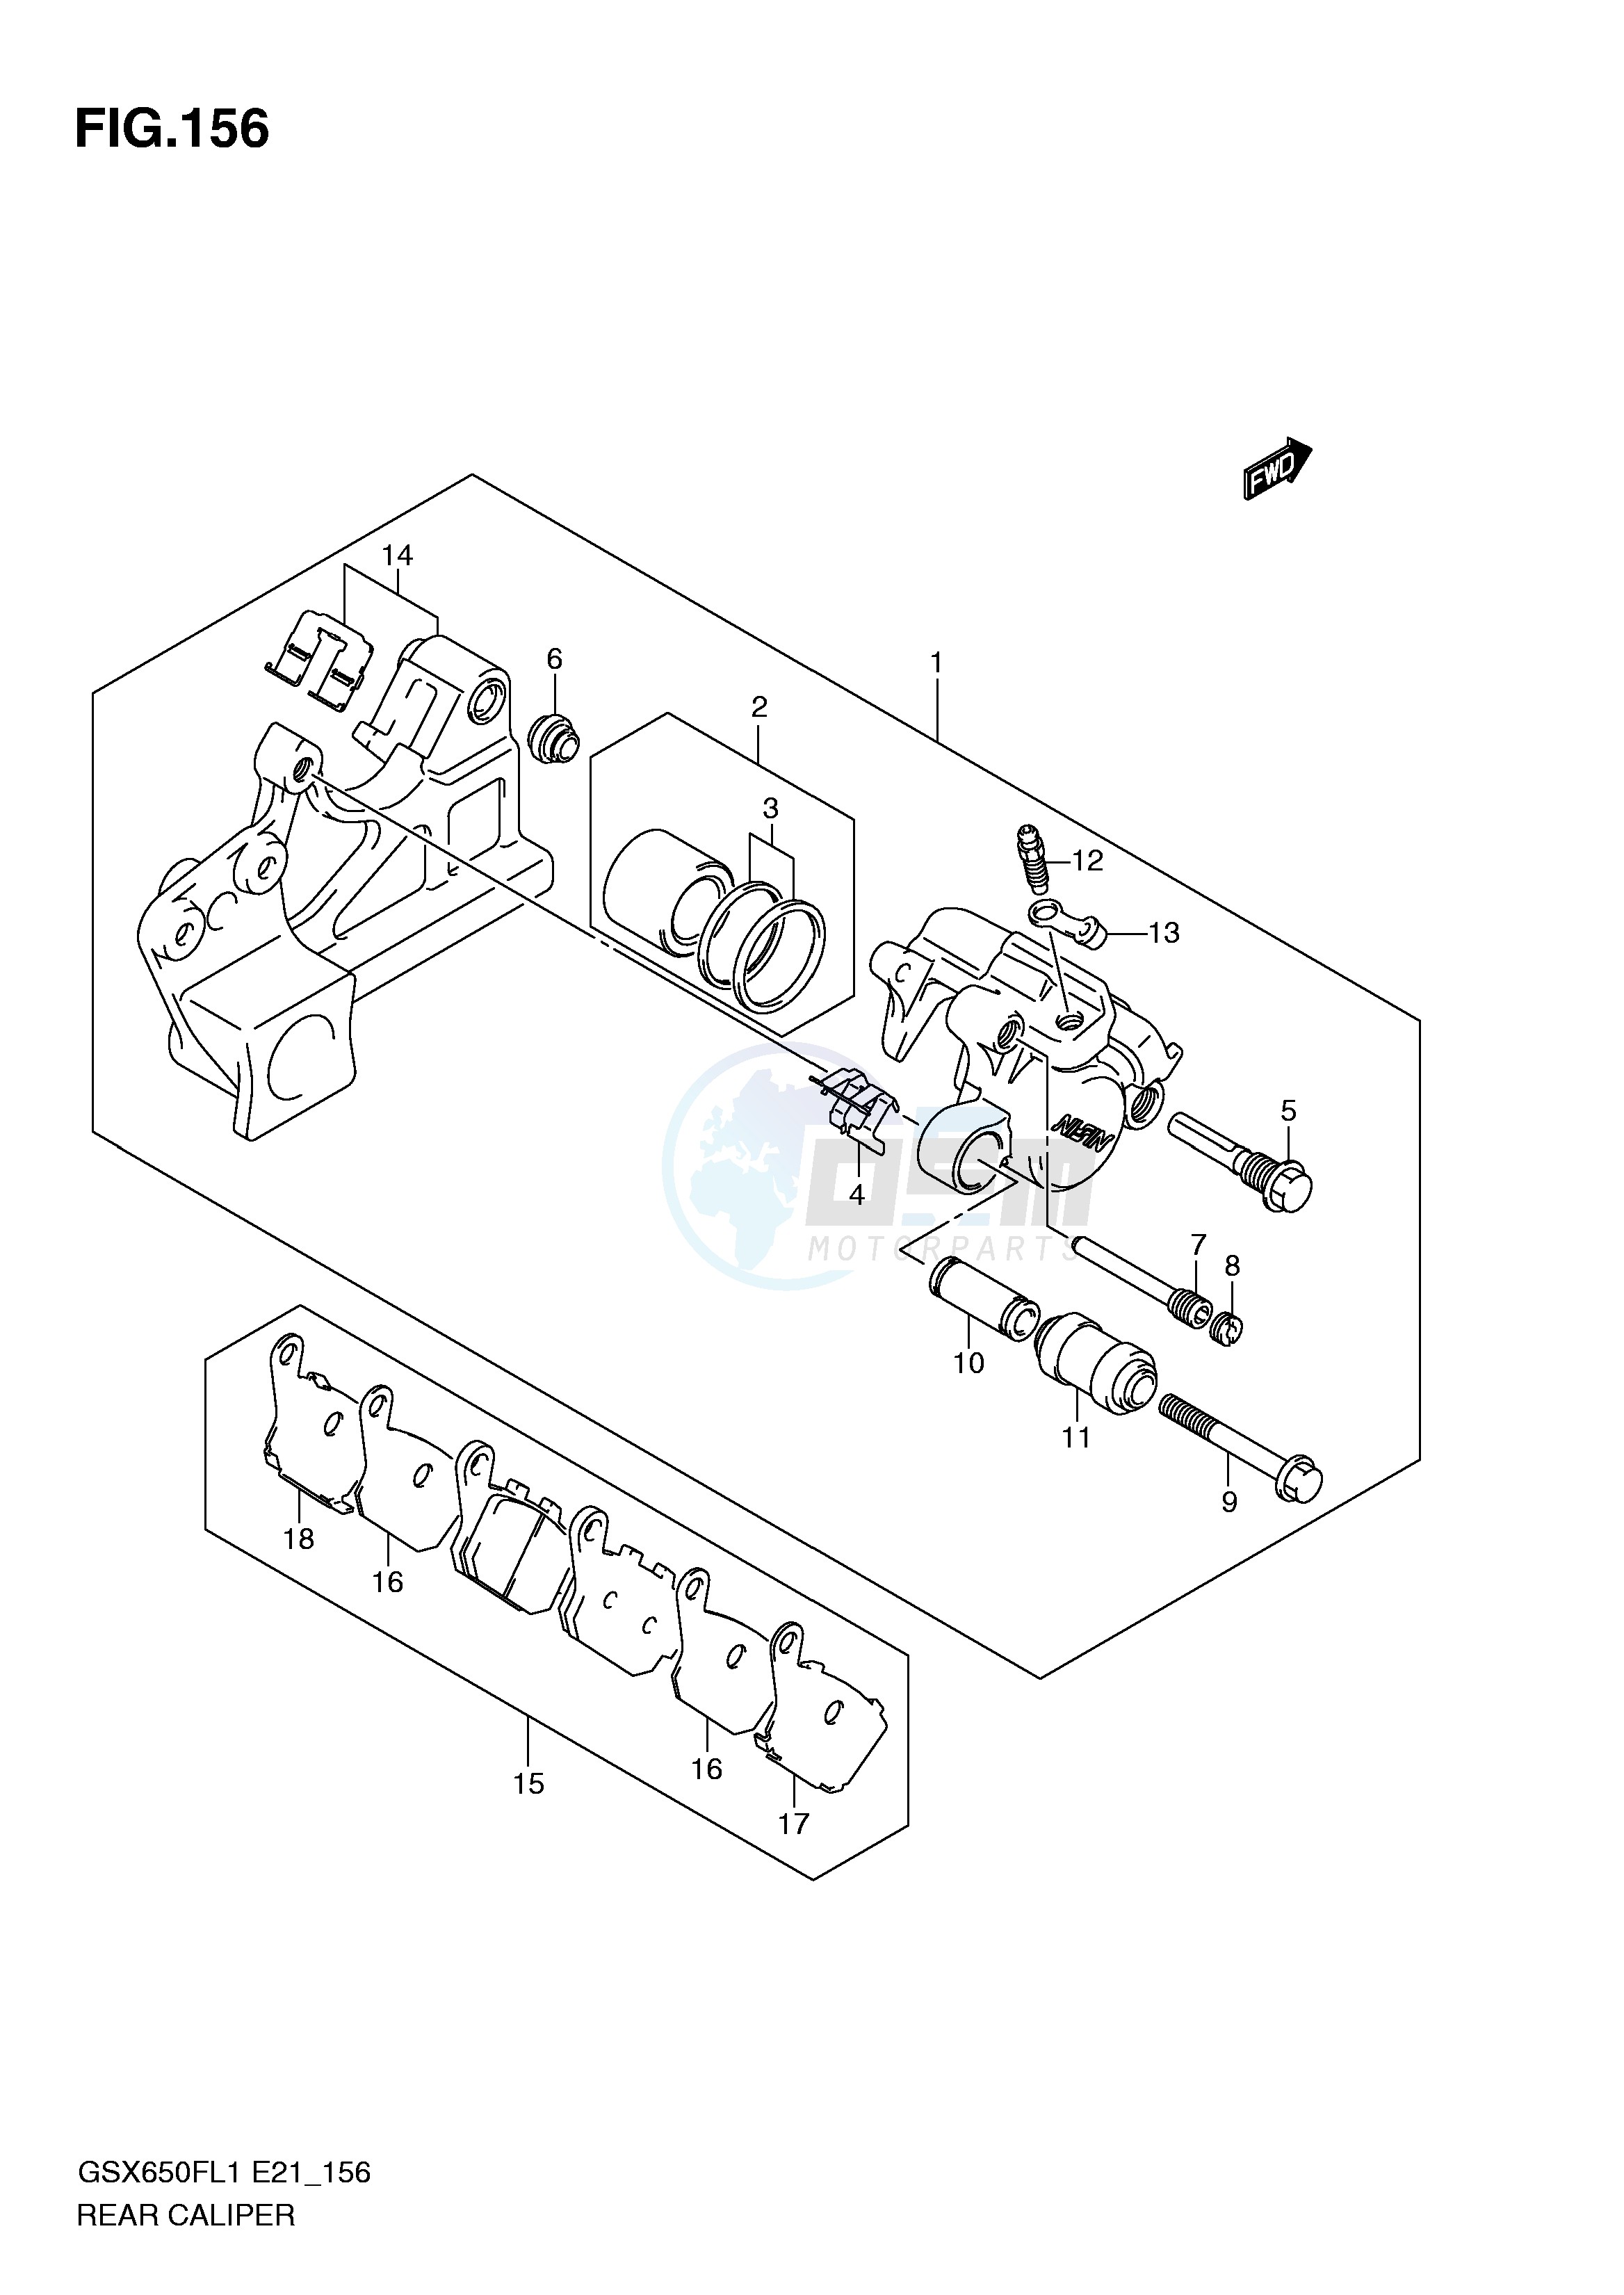 REAR CALIPER (GSX650FAL1 E21) blueprint